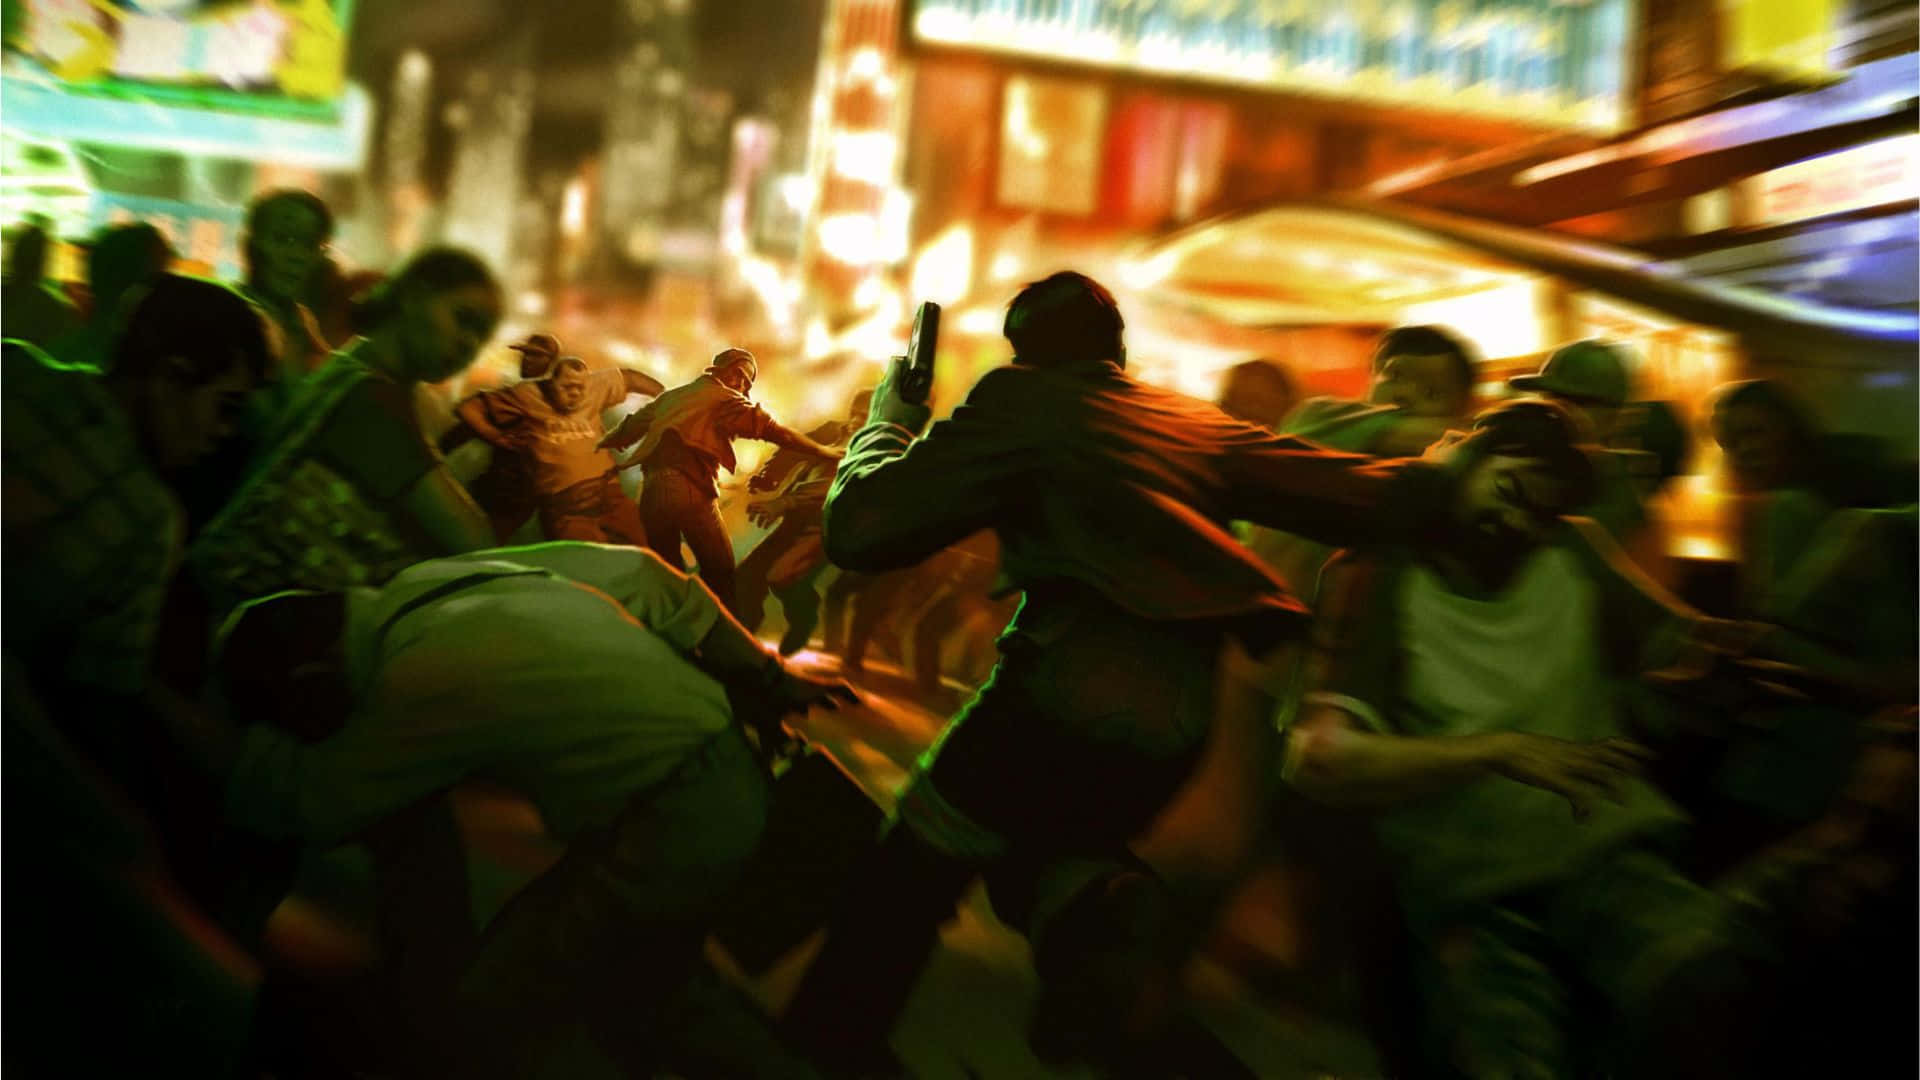 Högupplöstbakgrund Med Scen Från Spelet Sleeping Dogs Riot.